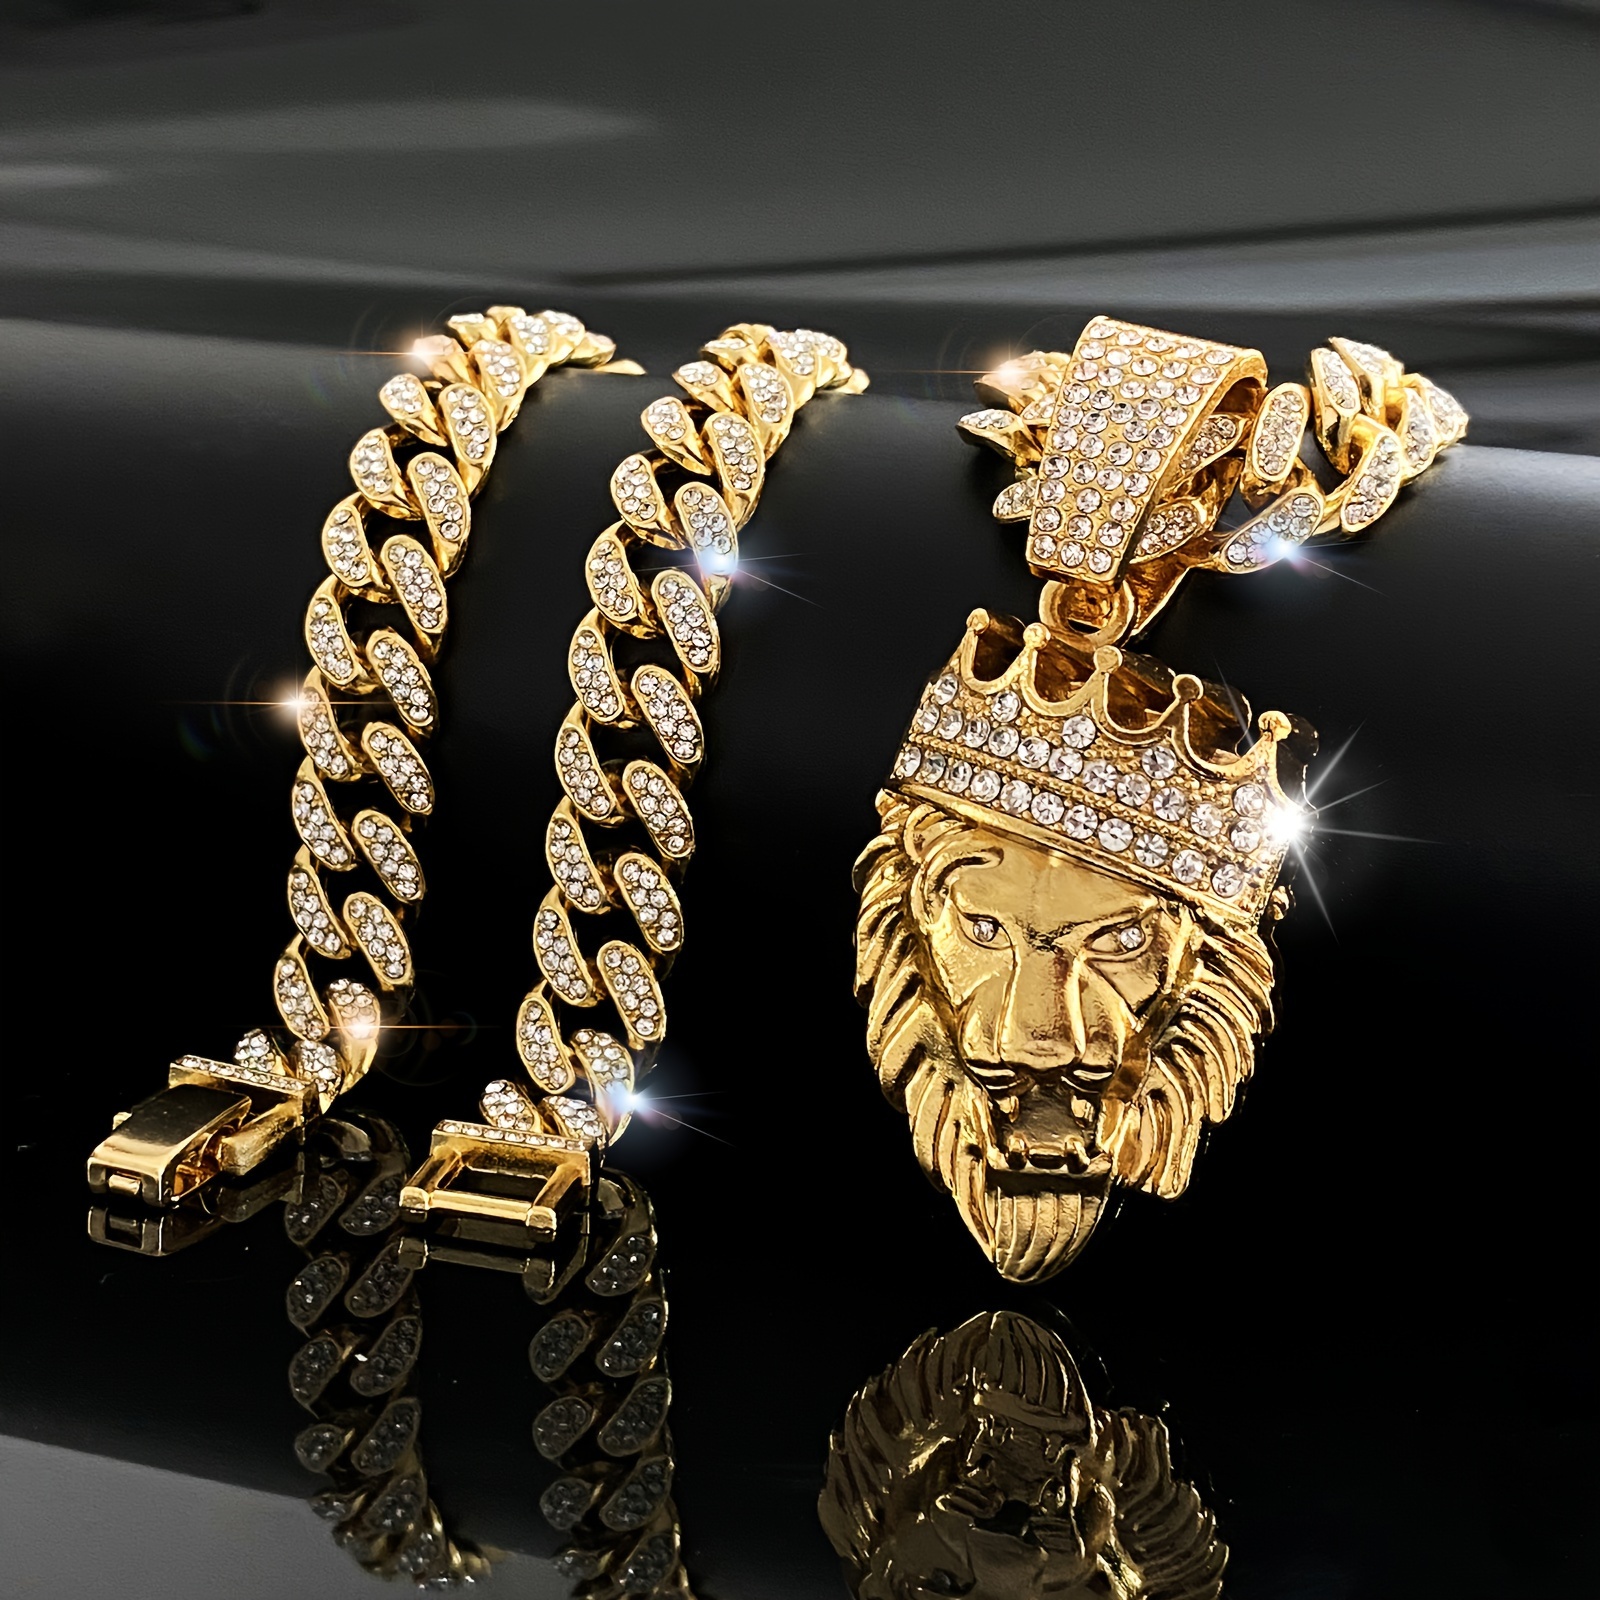 

Crown Lion Head Zinc Alloy Pendant Necklace, Hip Hop Man Full Of Cuban Chain